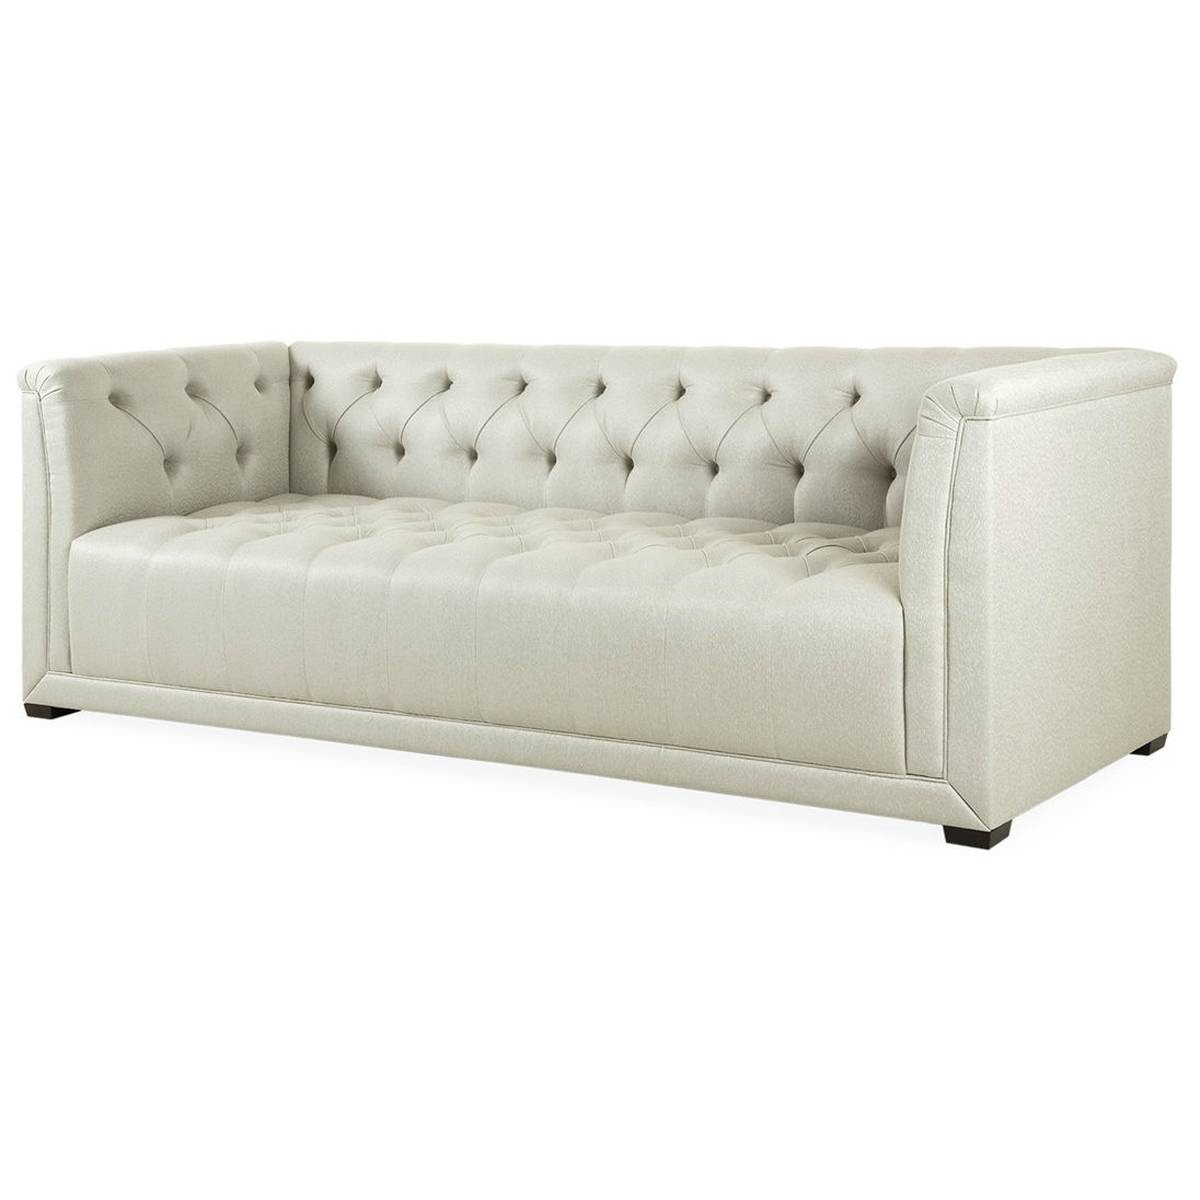 Прямой диван Belmont из Великобритании фабрики THE SOFA & CHAIR Company